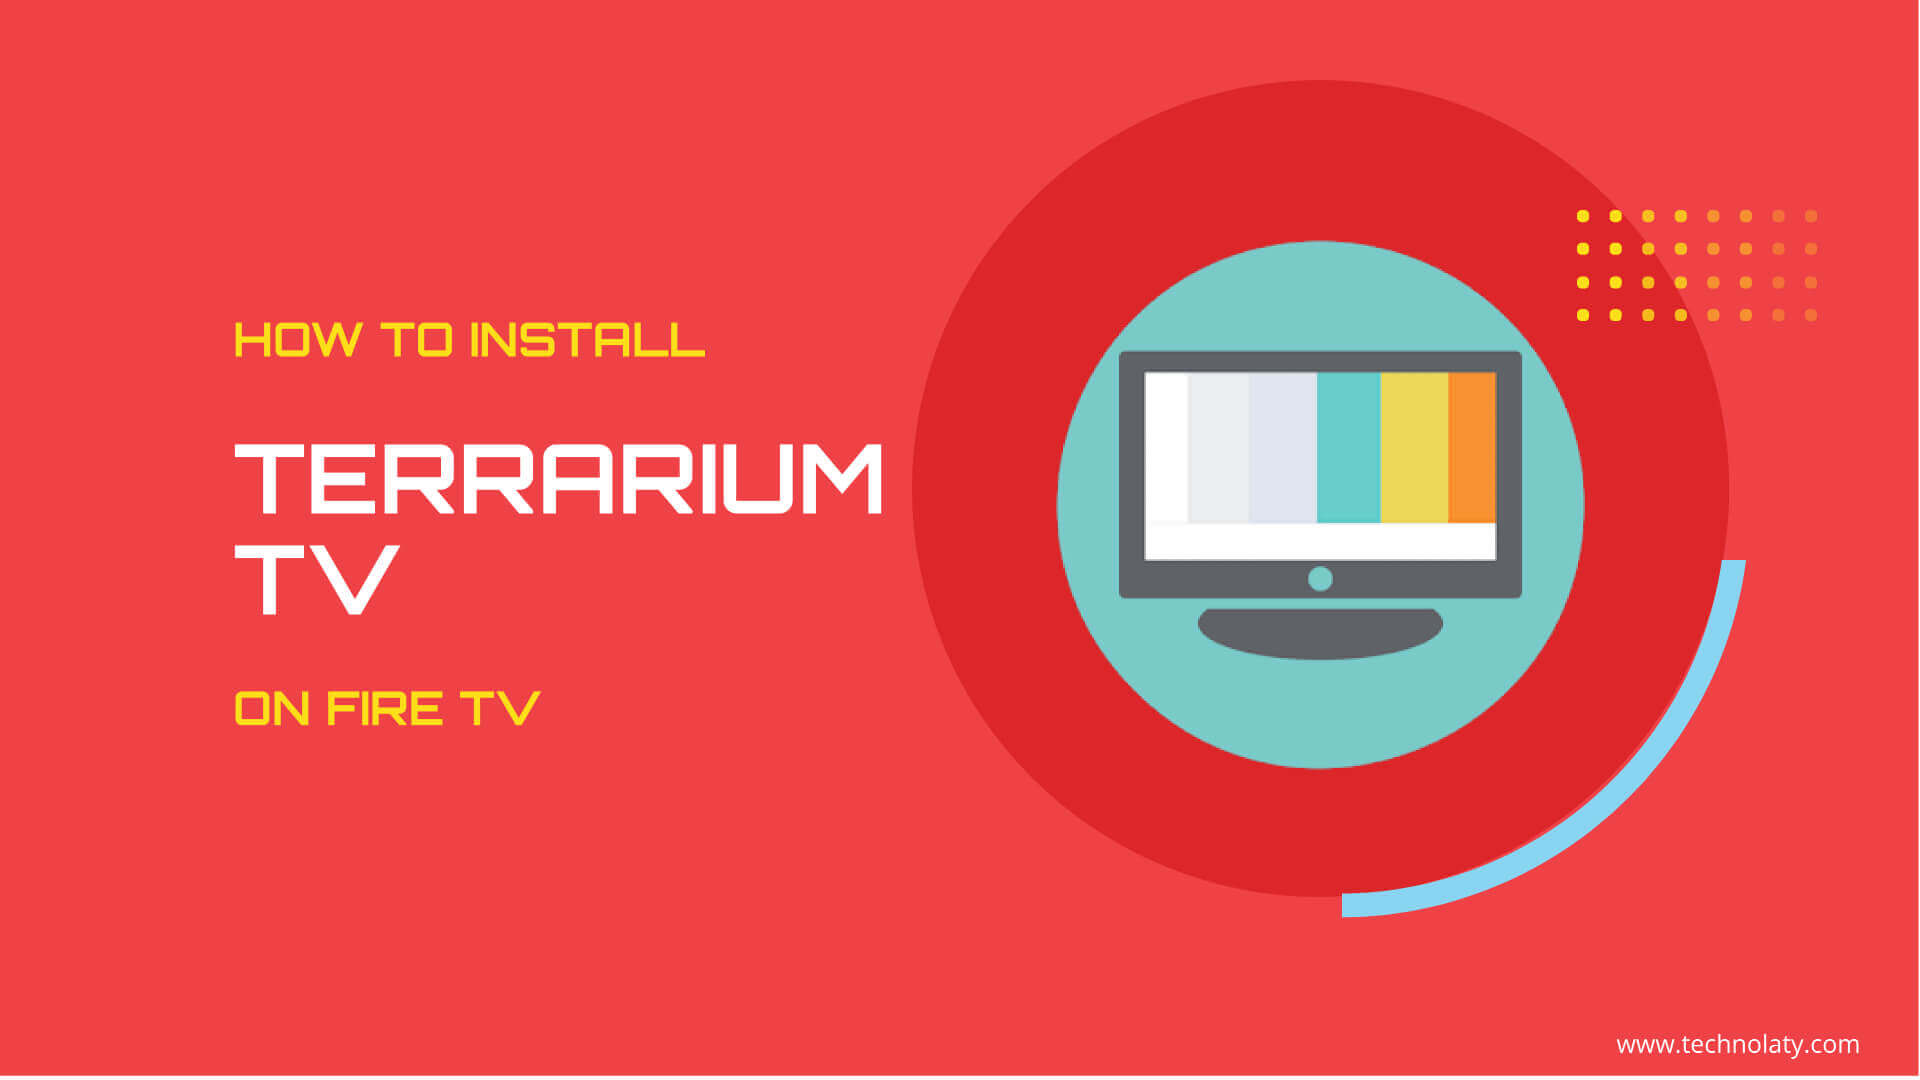 terrarium tv download video reddit flag